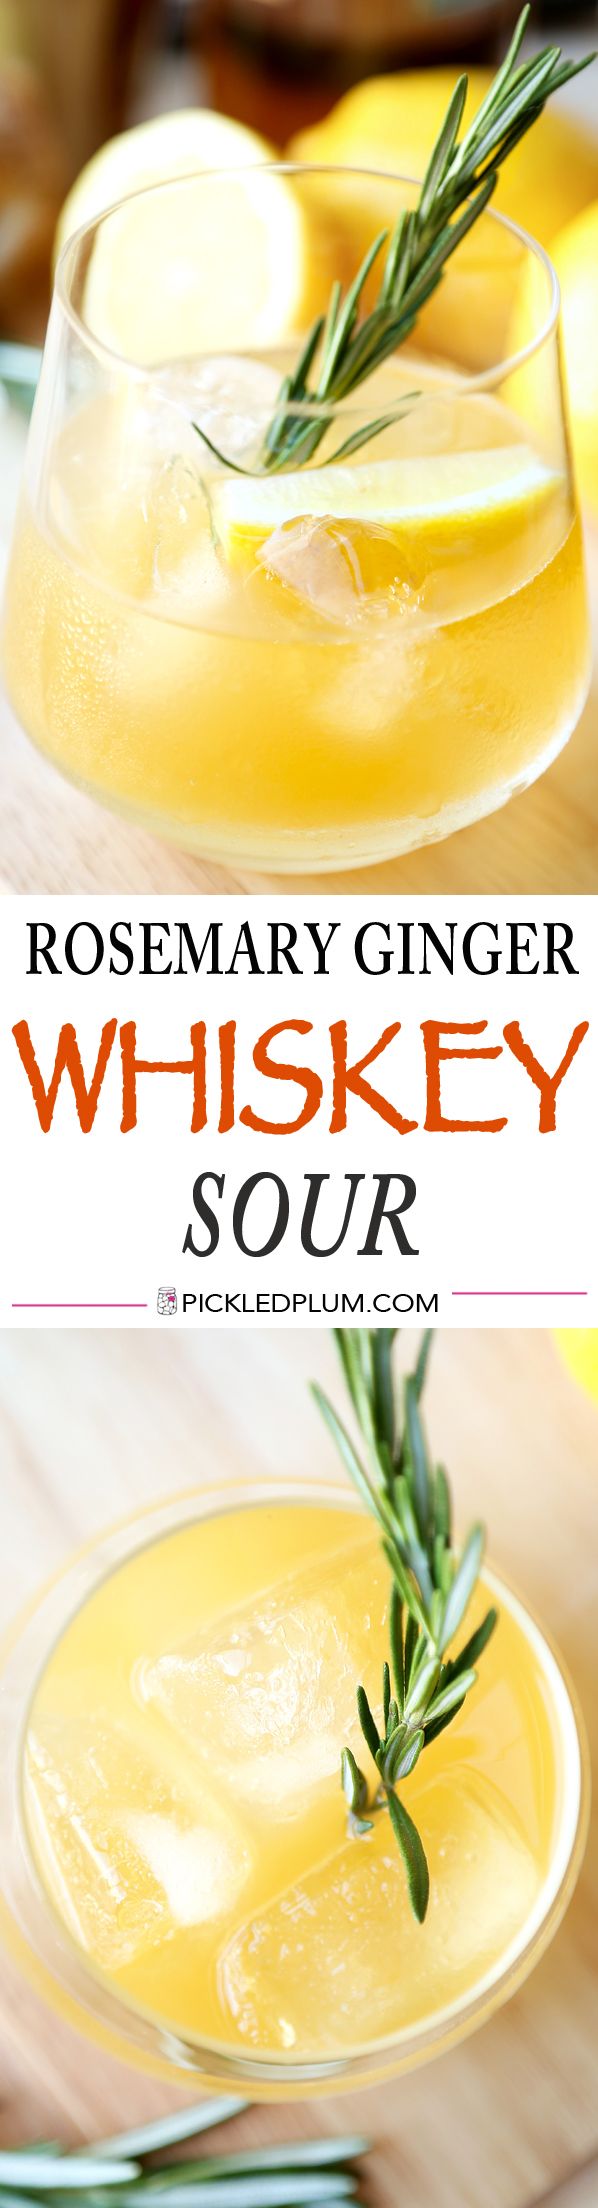 Rosemary Ginger Whiskey Sour